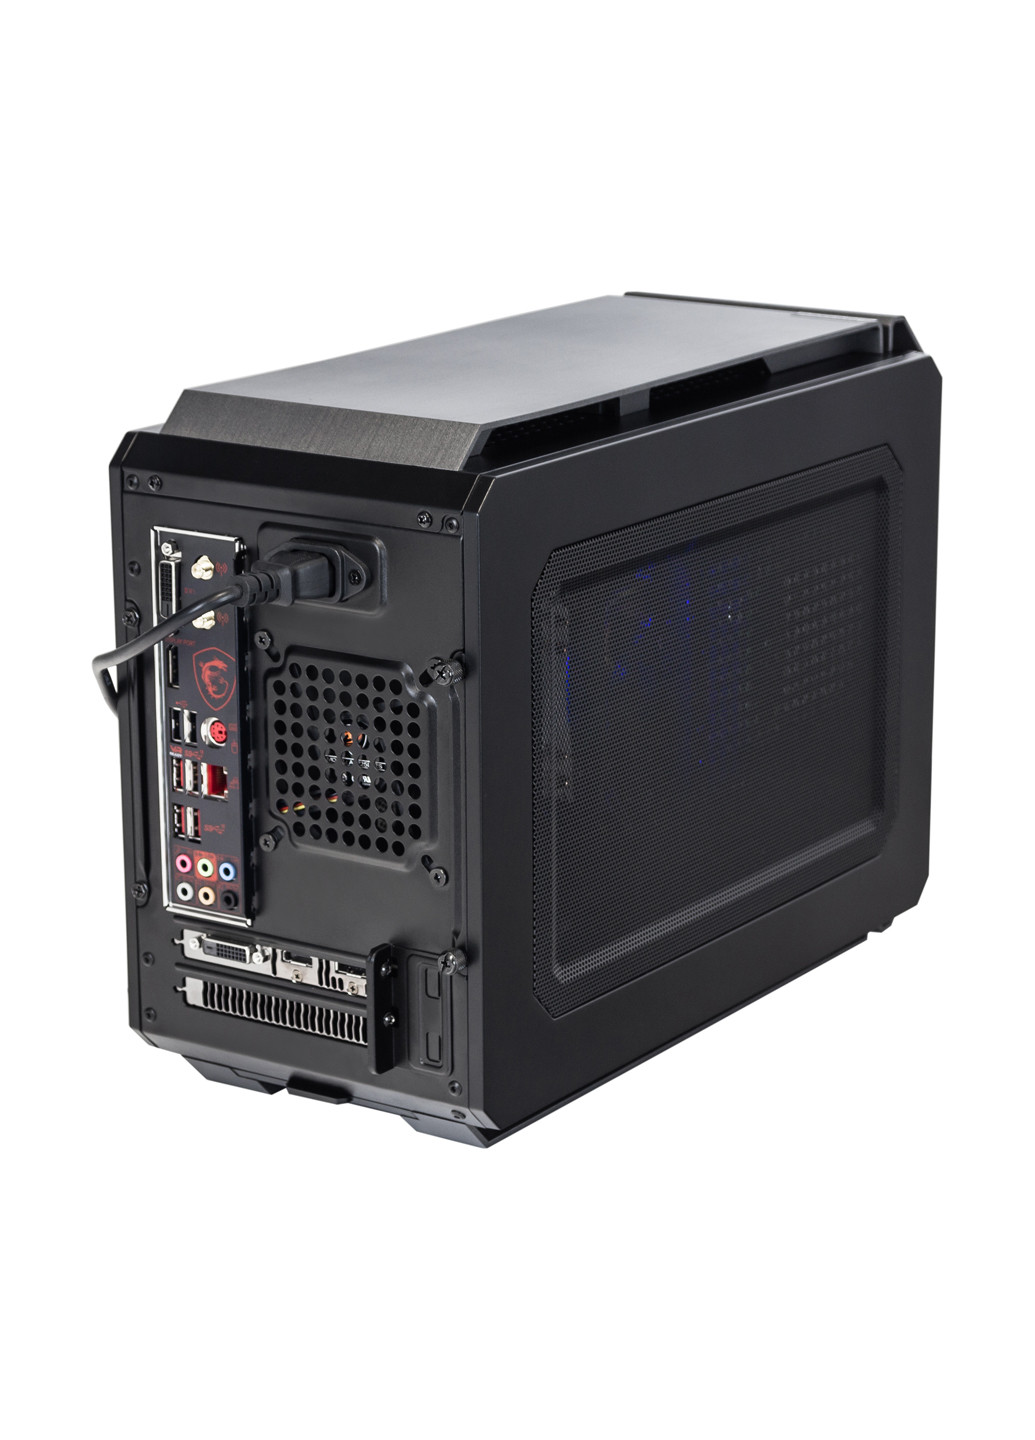 Комп'ютер I2618 Qbox qbox i2618 (131396731)